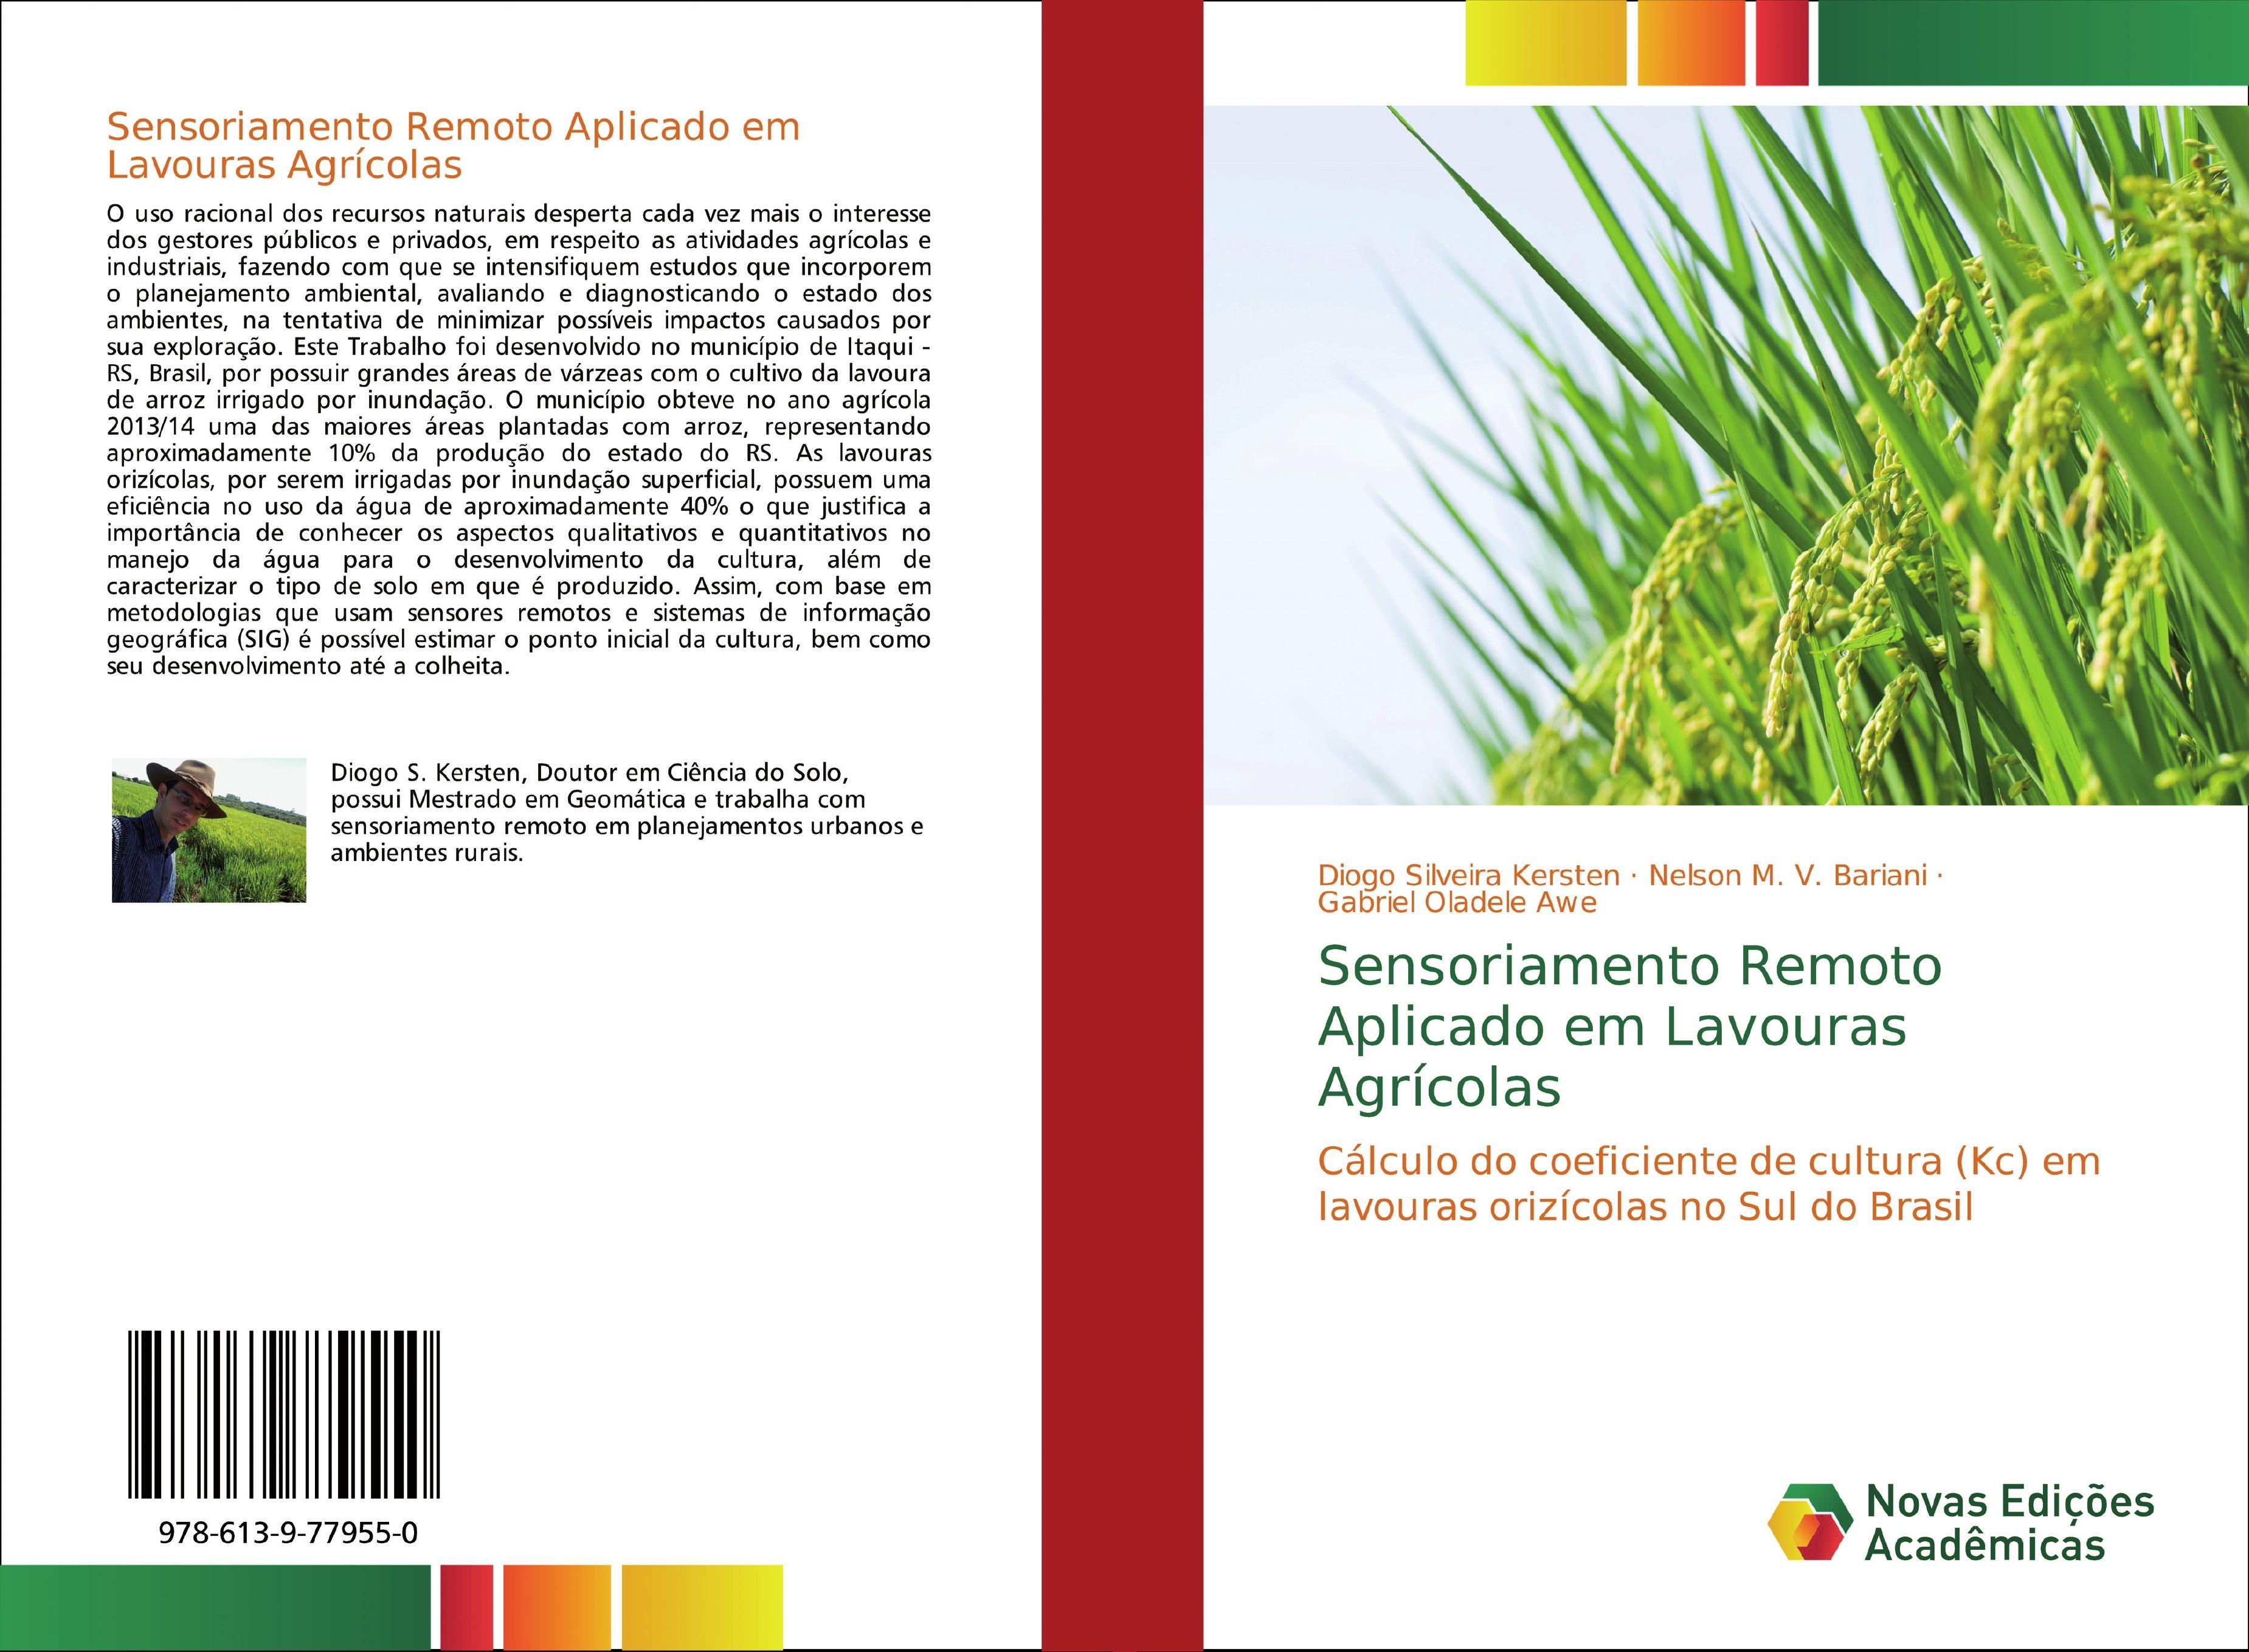 Sensoriamento Remoto Aplicado em Lavouras Agrícolas - Diogo Silveira Kersten|Nelson M. V. Bariani|Gabriel Oladele Awe